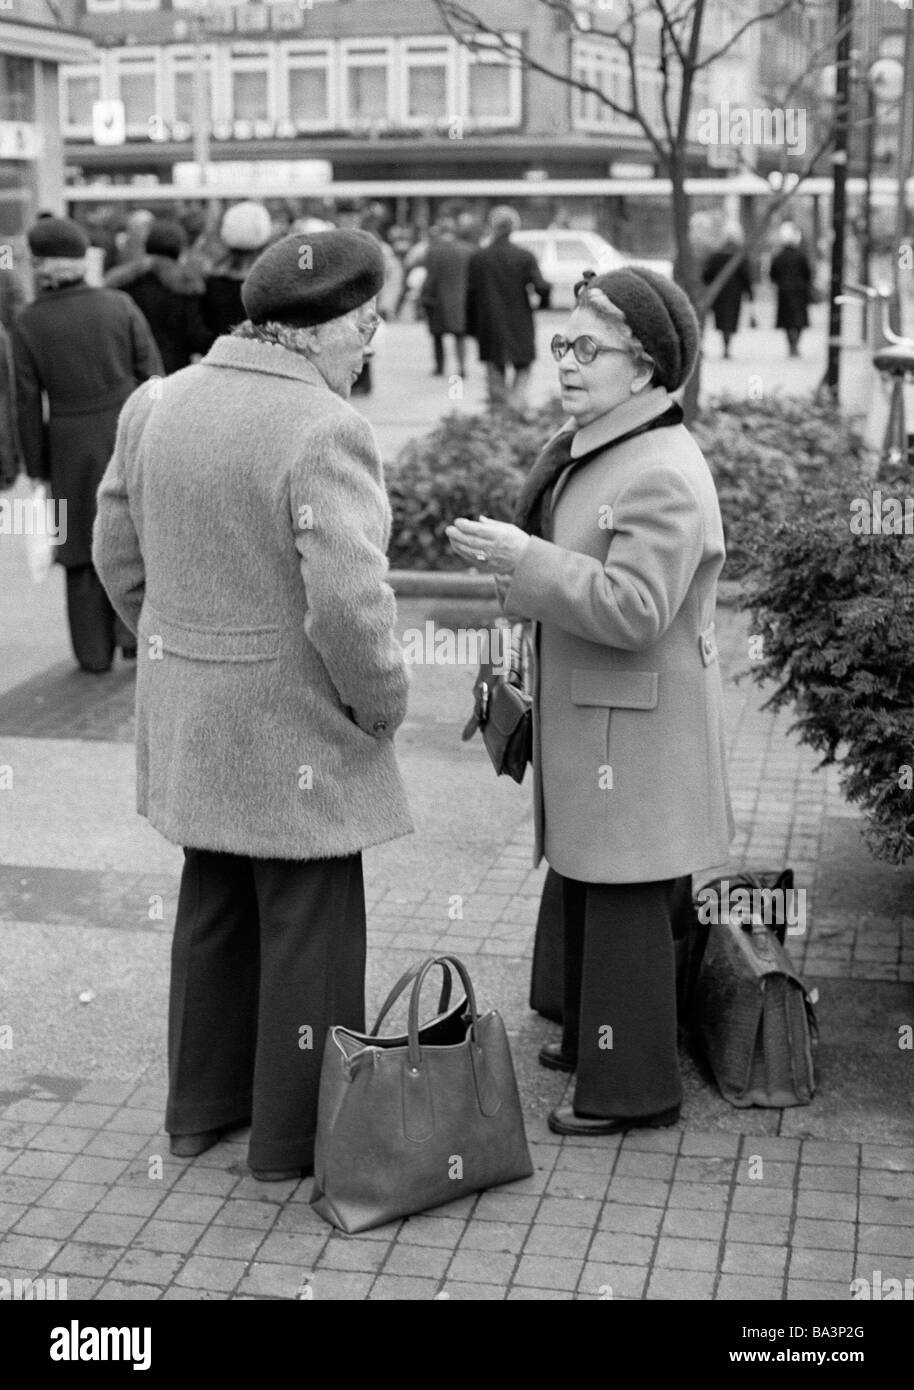 Années 70, photo en noir et blanc, les gens, les deux femmes âgées dans une conversation dans la rue, des sacs, âgés de 70 à 80 ans Banque D'Images